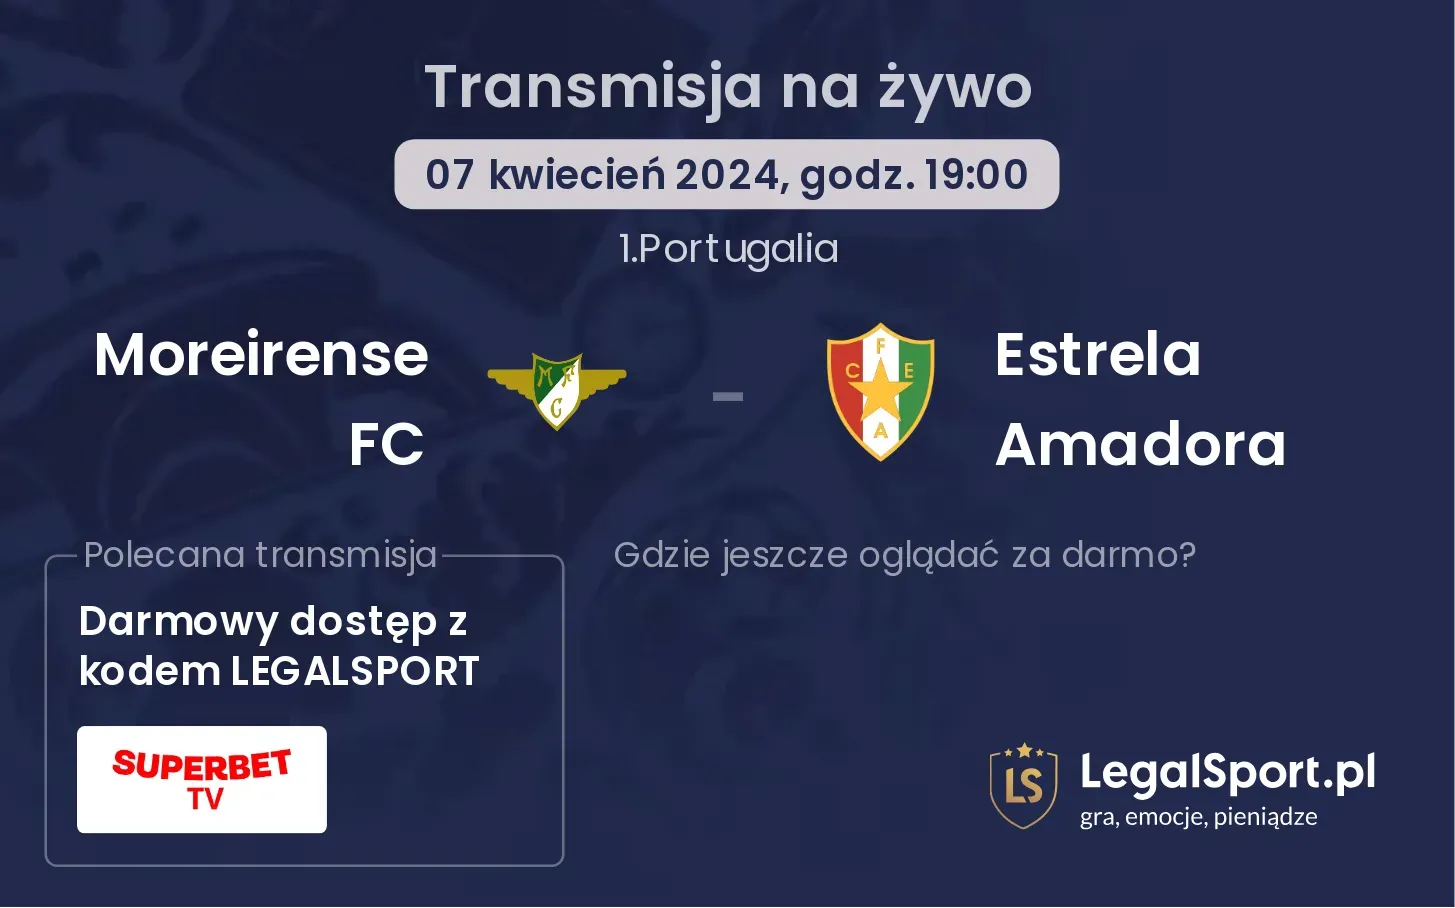 Moreirense FC - Estrela Amadora transmisja na żywo